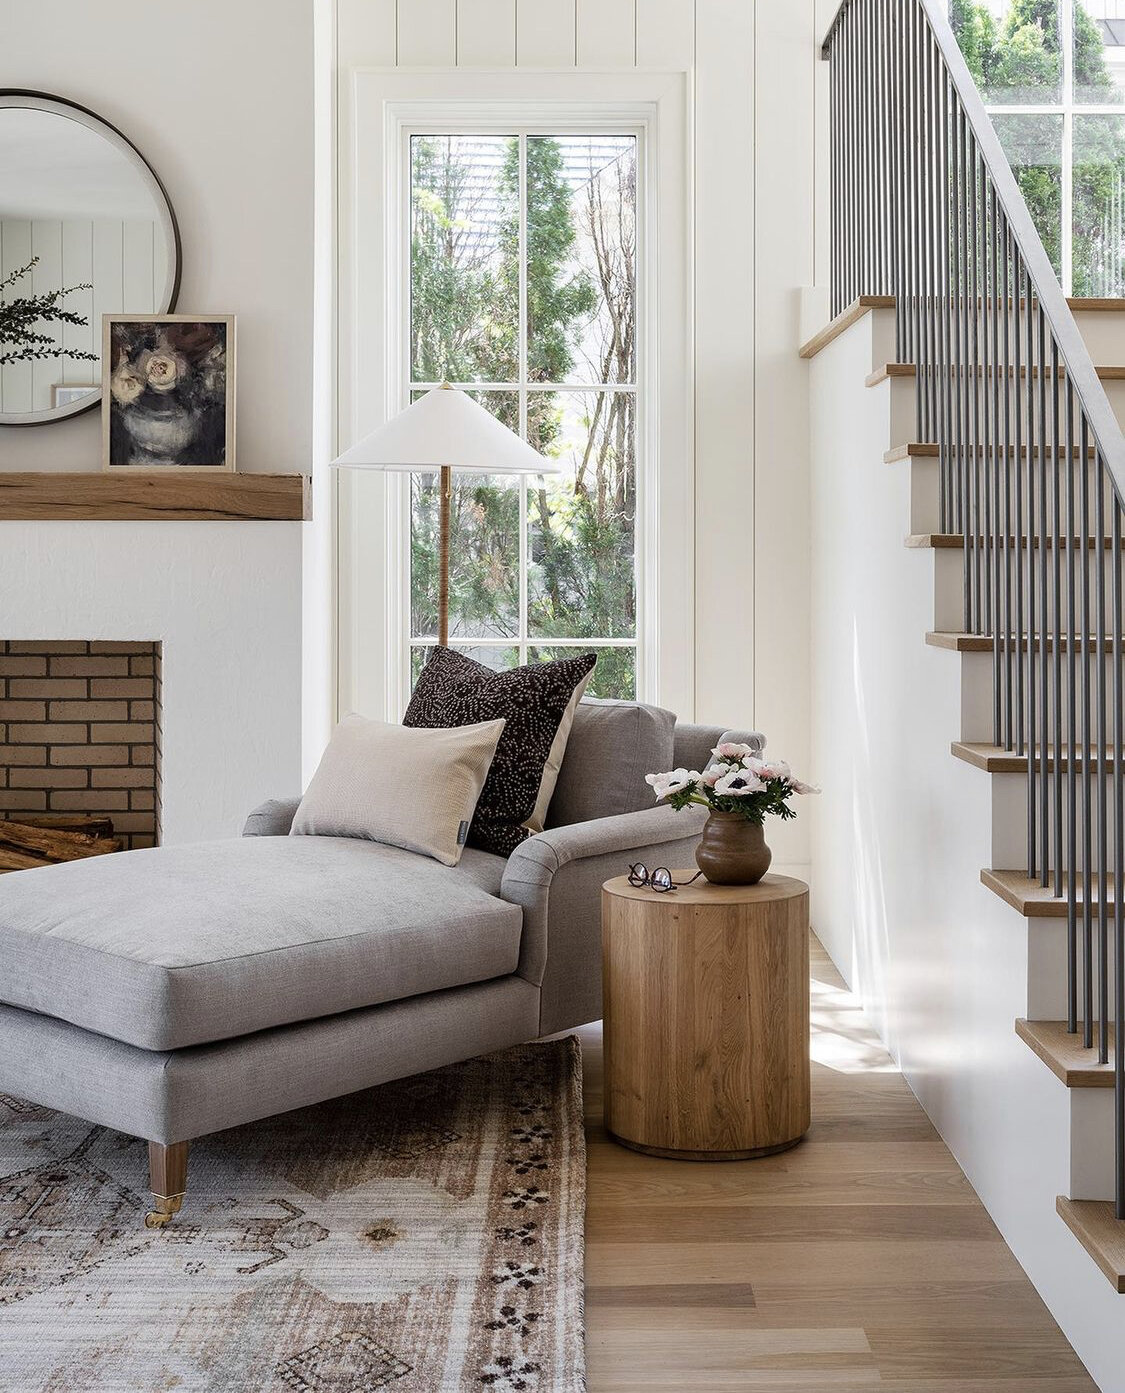 Contemporary Home Interior Design Ideas – House Interior Decor